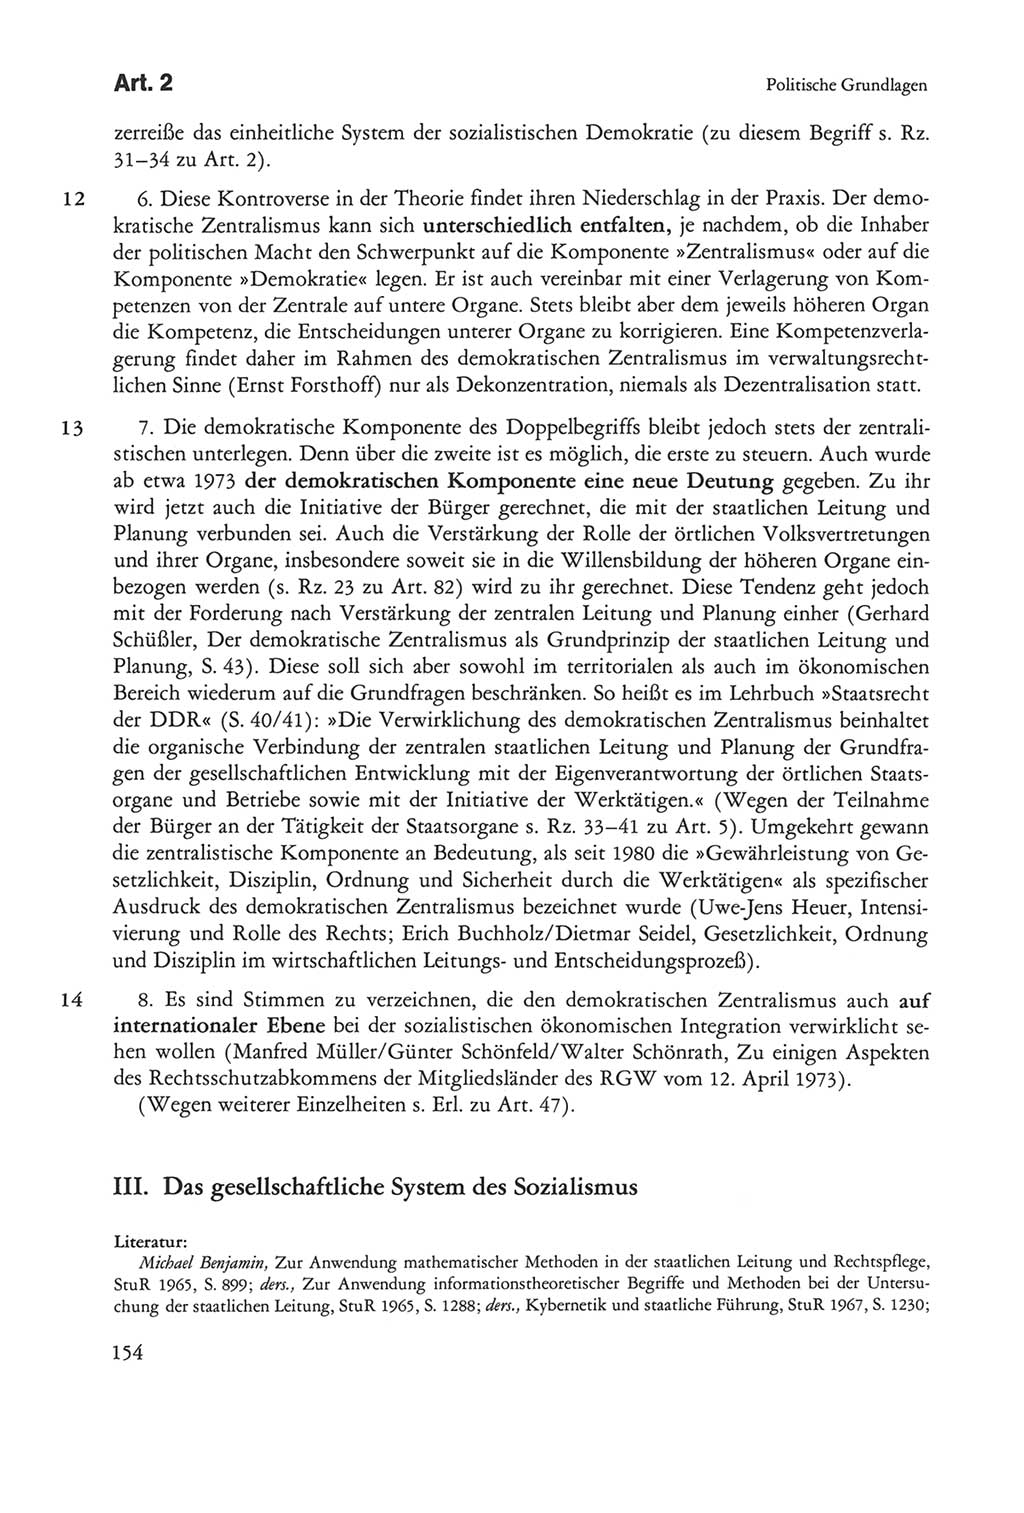 Die sozialistische Verfassung der Deutschen Demokratischen Republik (DDR), Kommentar mit einem Nachtrag 1997, Seite 154 (Soz. Verf. DDR Komm. Nachtr. 1997, S. 154)